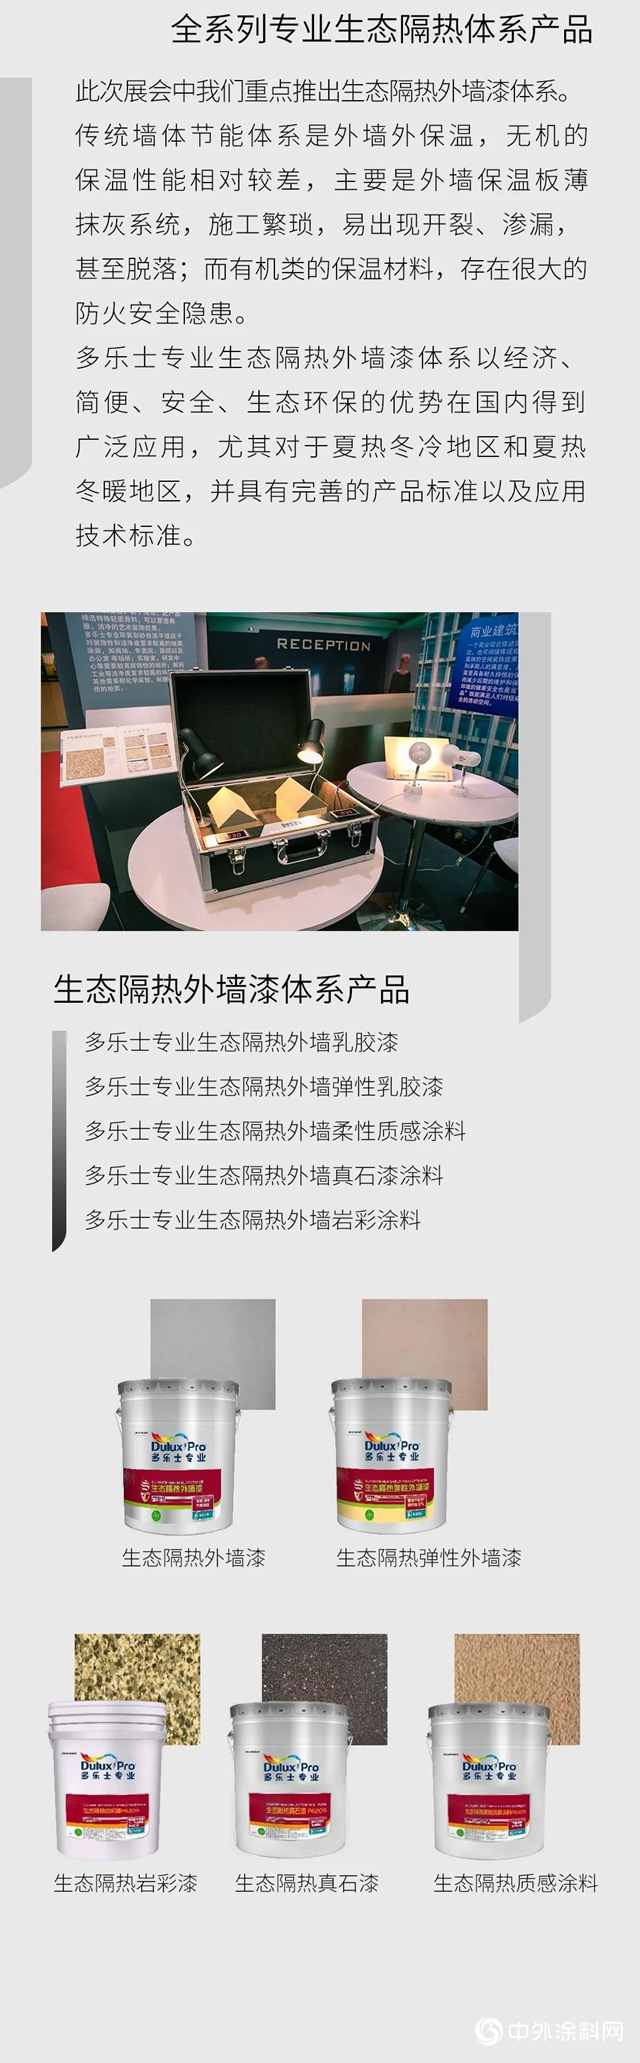 2020中国国际涂料博览会-多乐士专业涂创未来